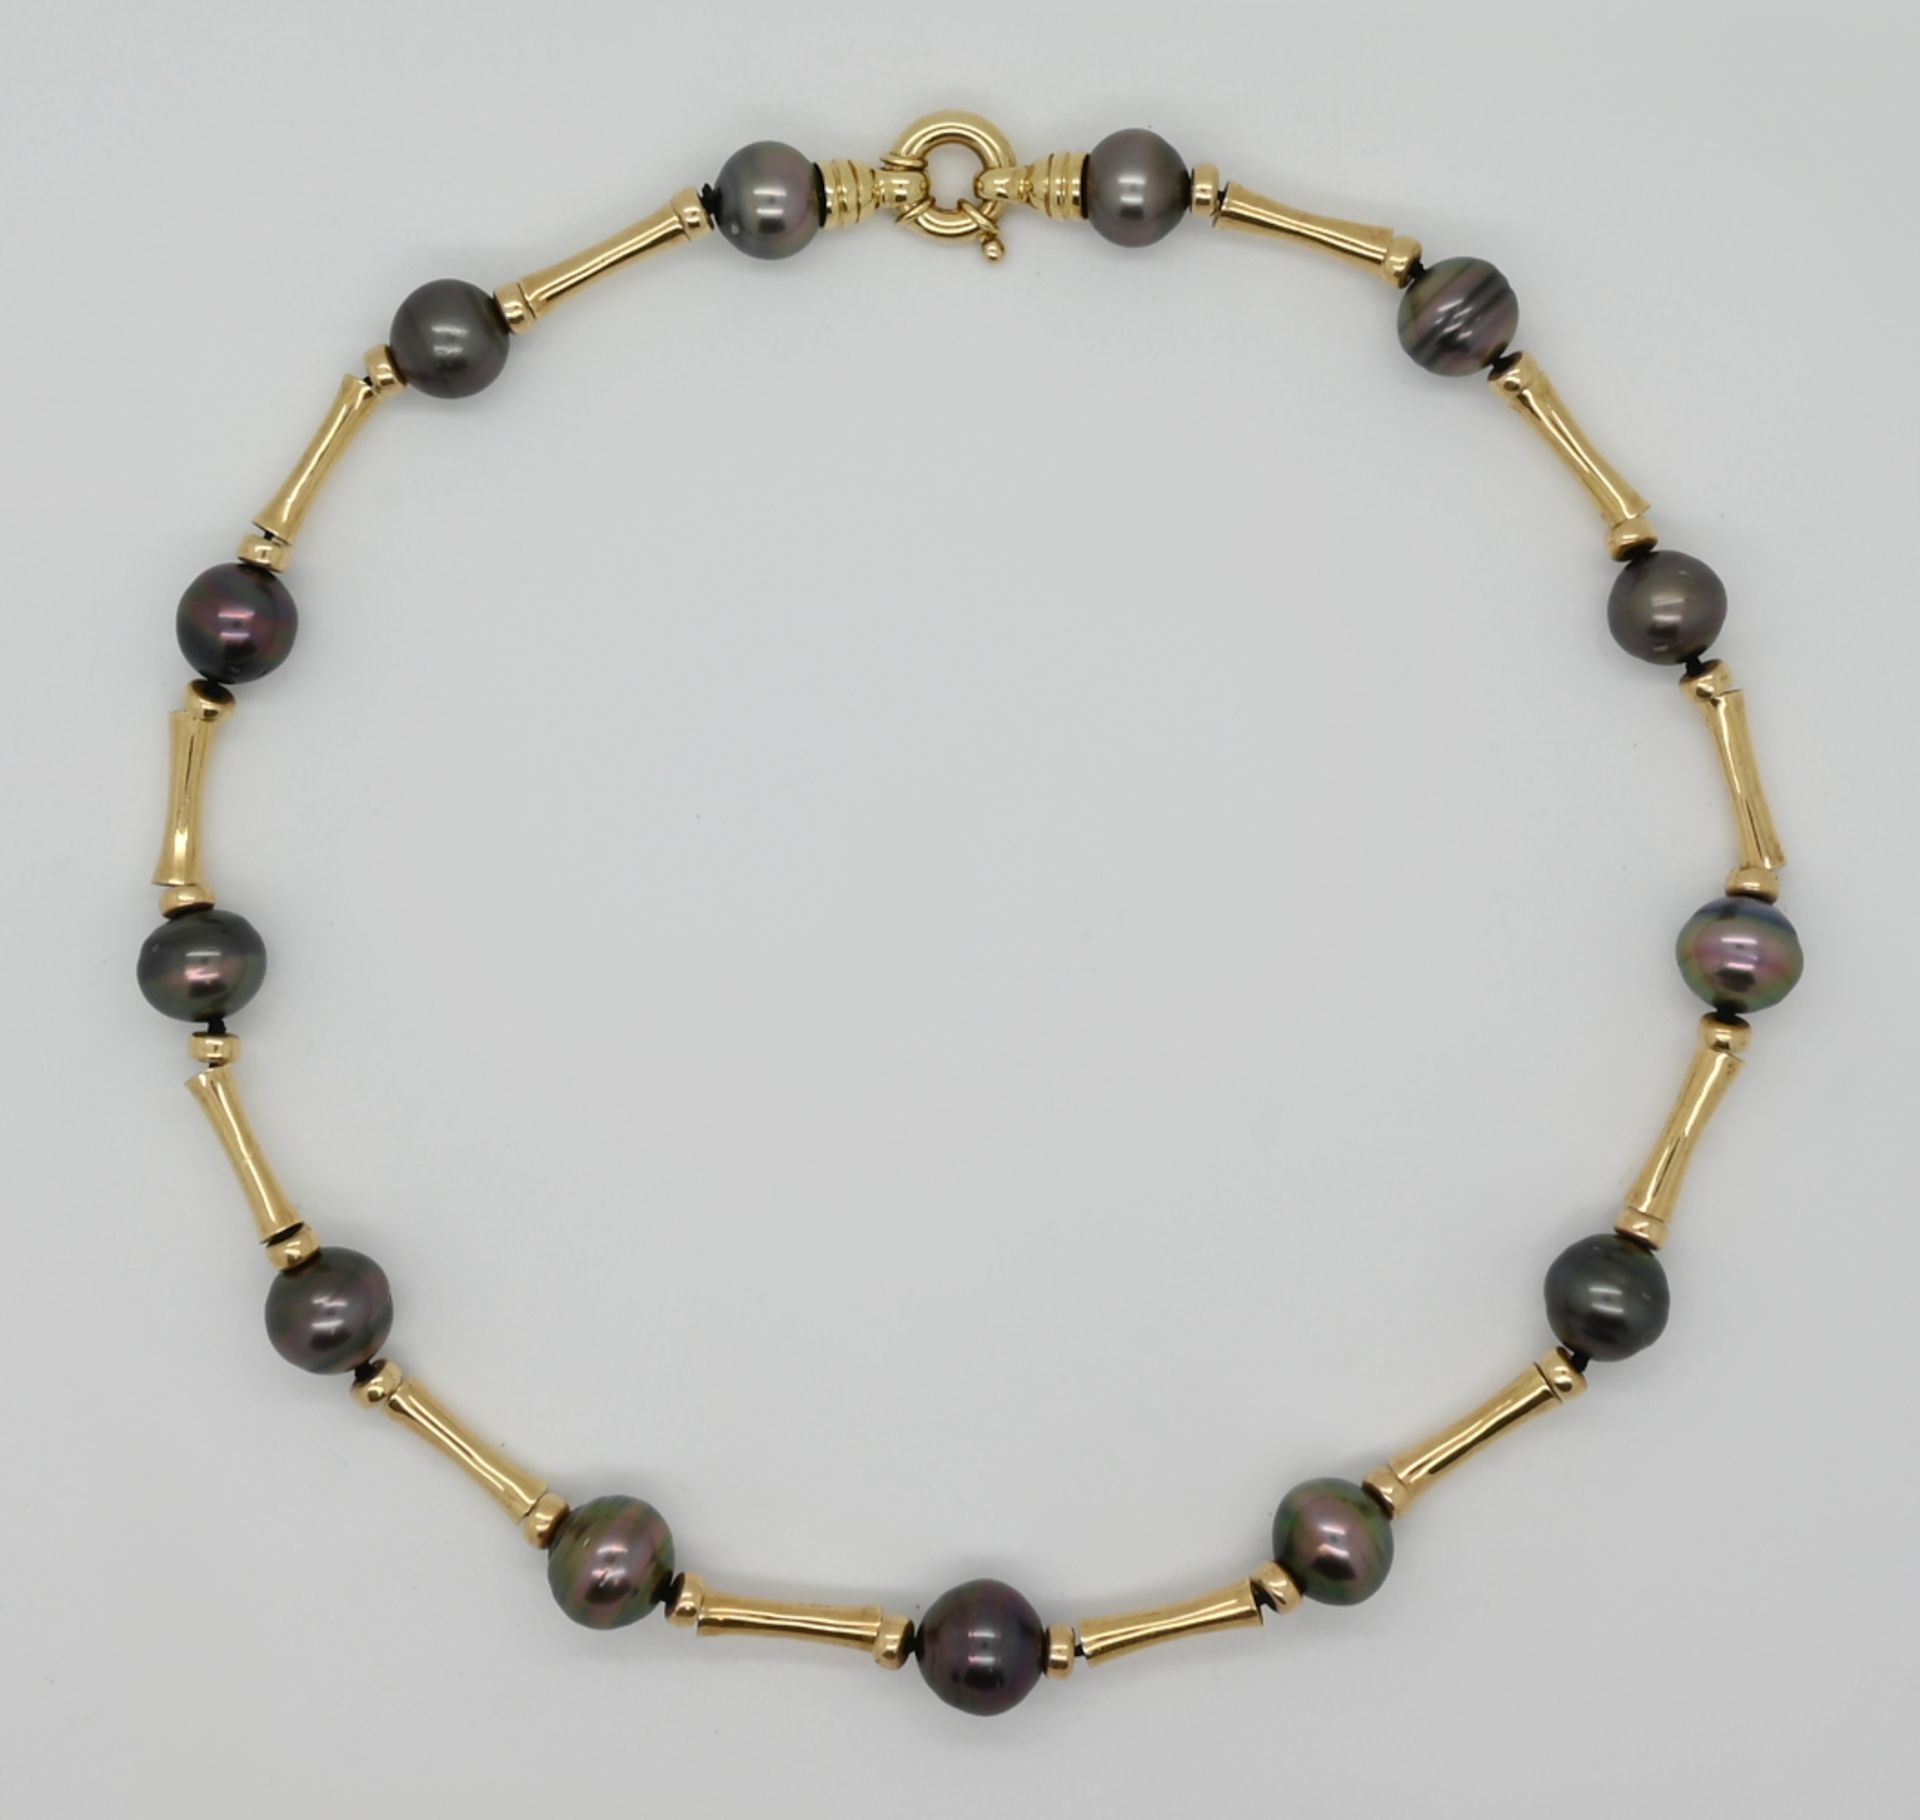 1 Kette GG 14ct., mit dunkelgrauen Perlen, versch. Größen, wohl bis zu ca. 1,3cm, Tsp.